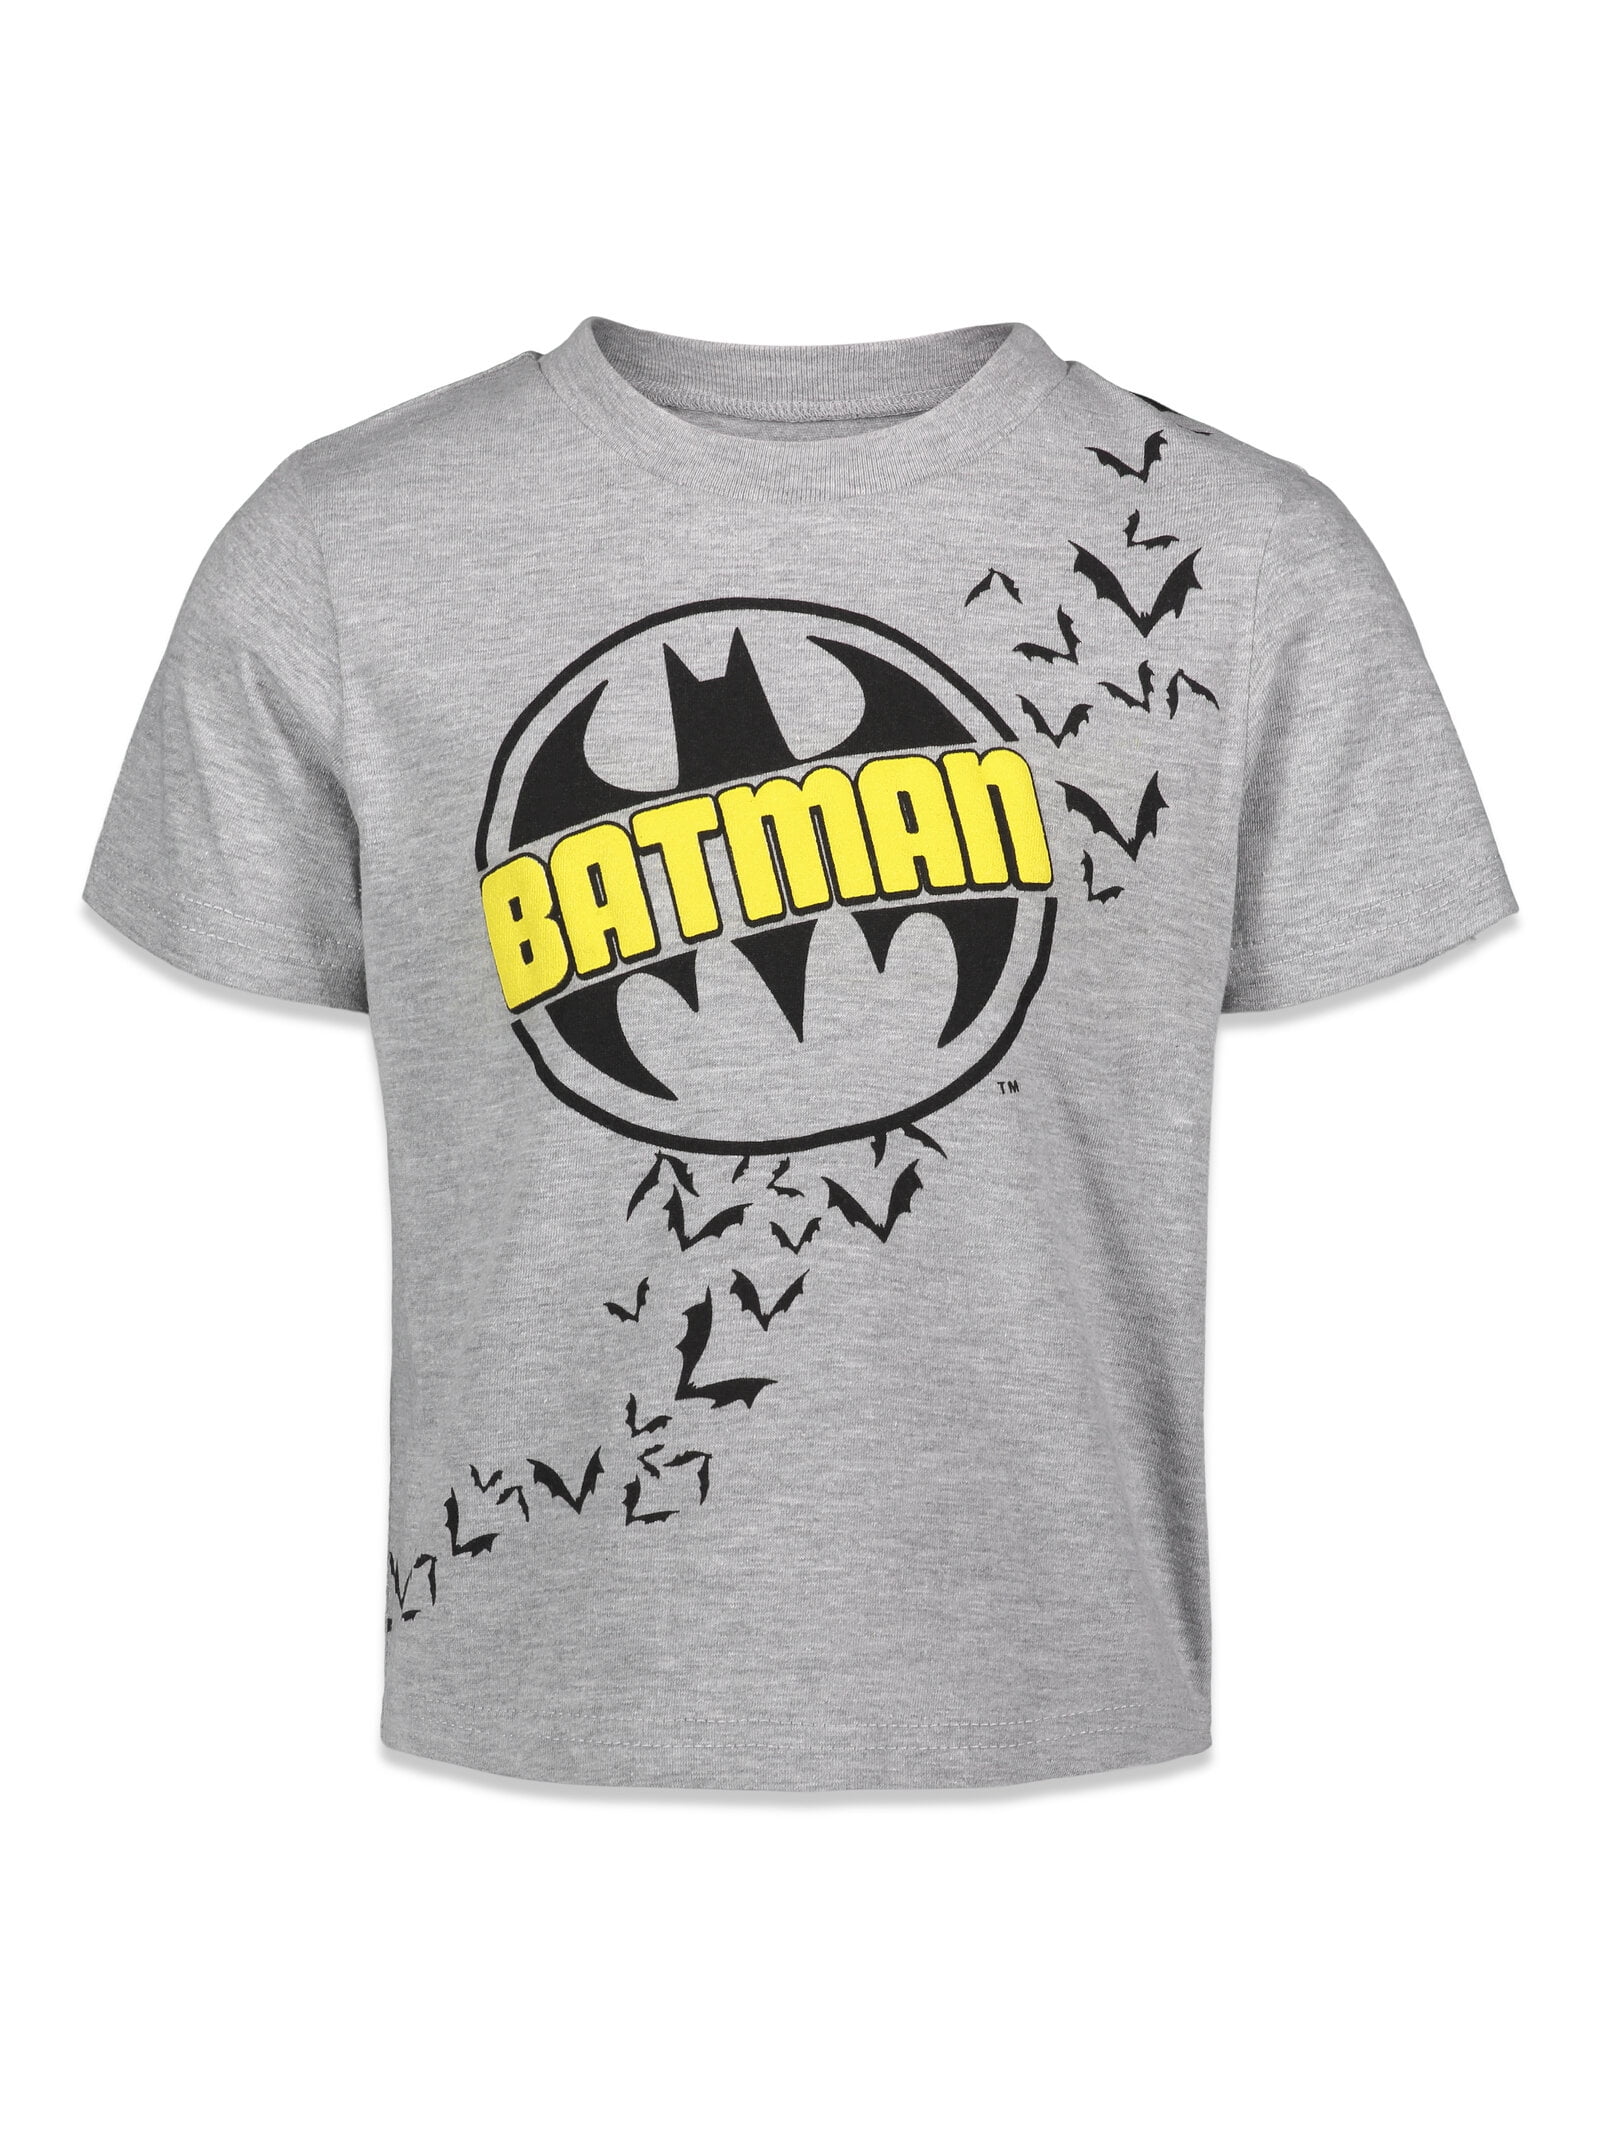 DC Comics Batman Joker Riddler Little Boys 3 Pack T-Shirts Toddler to Big  Kid